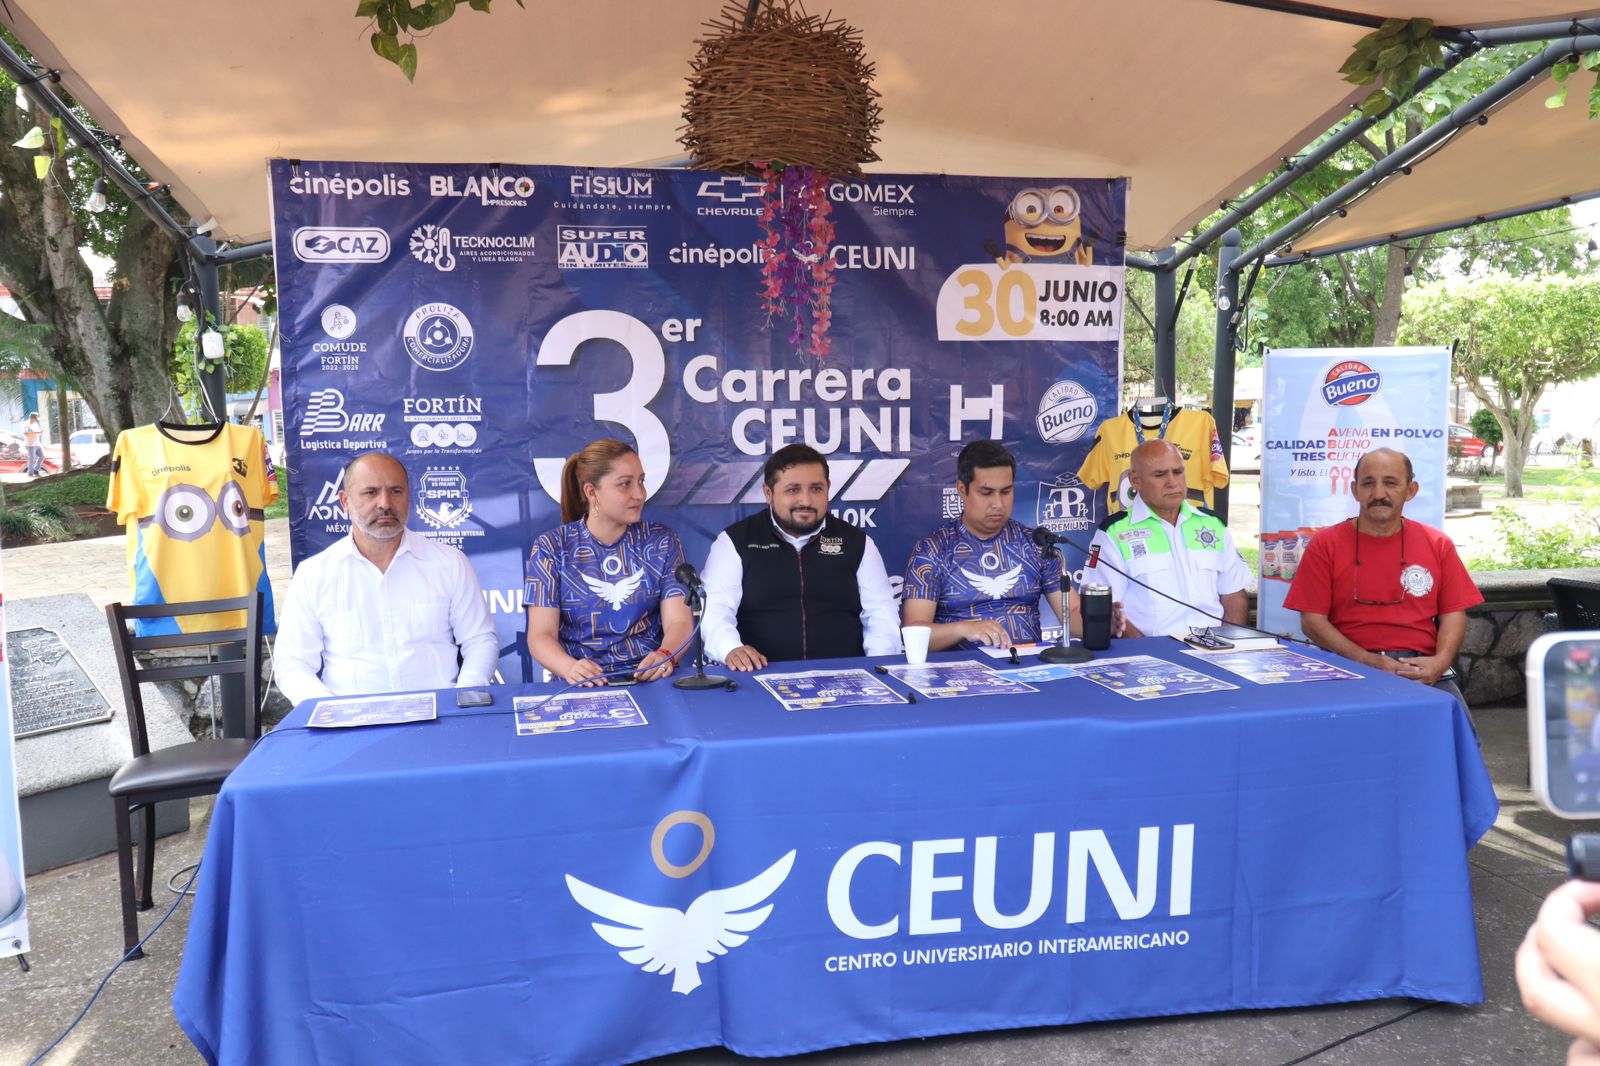 Invitan autoridades y Universidad a la tercera carrera CEUNI 5 km y 10 km